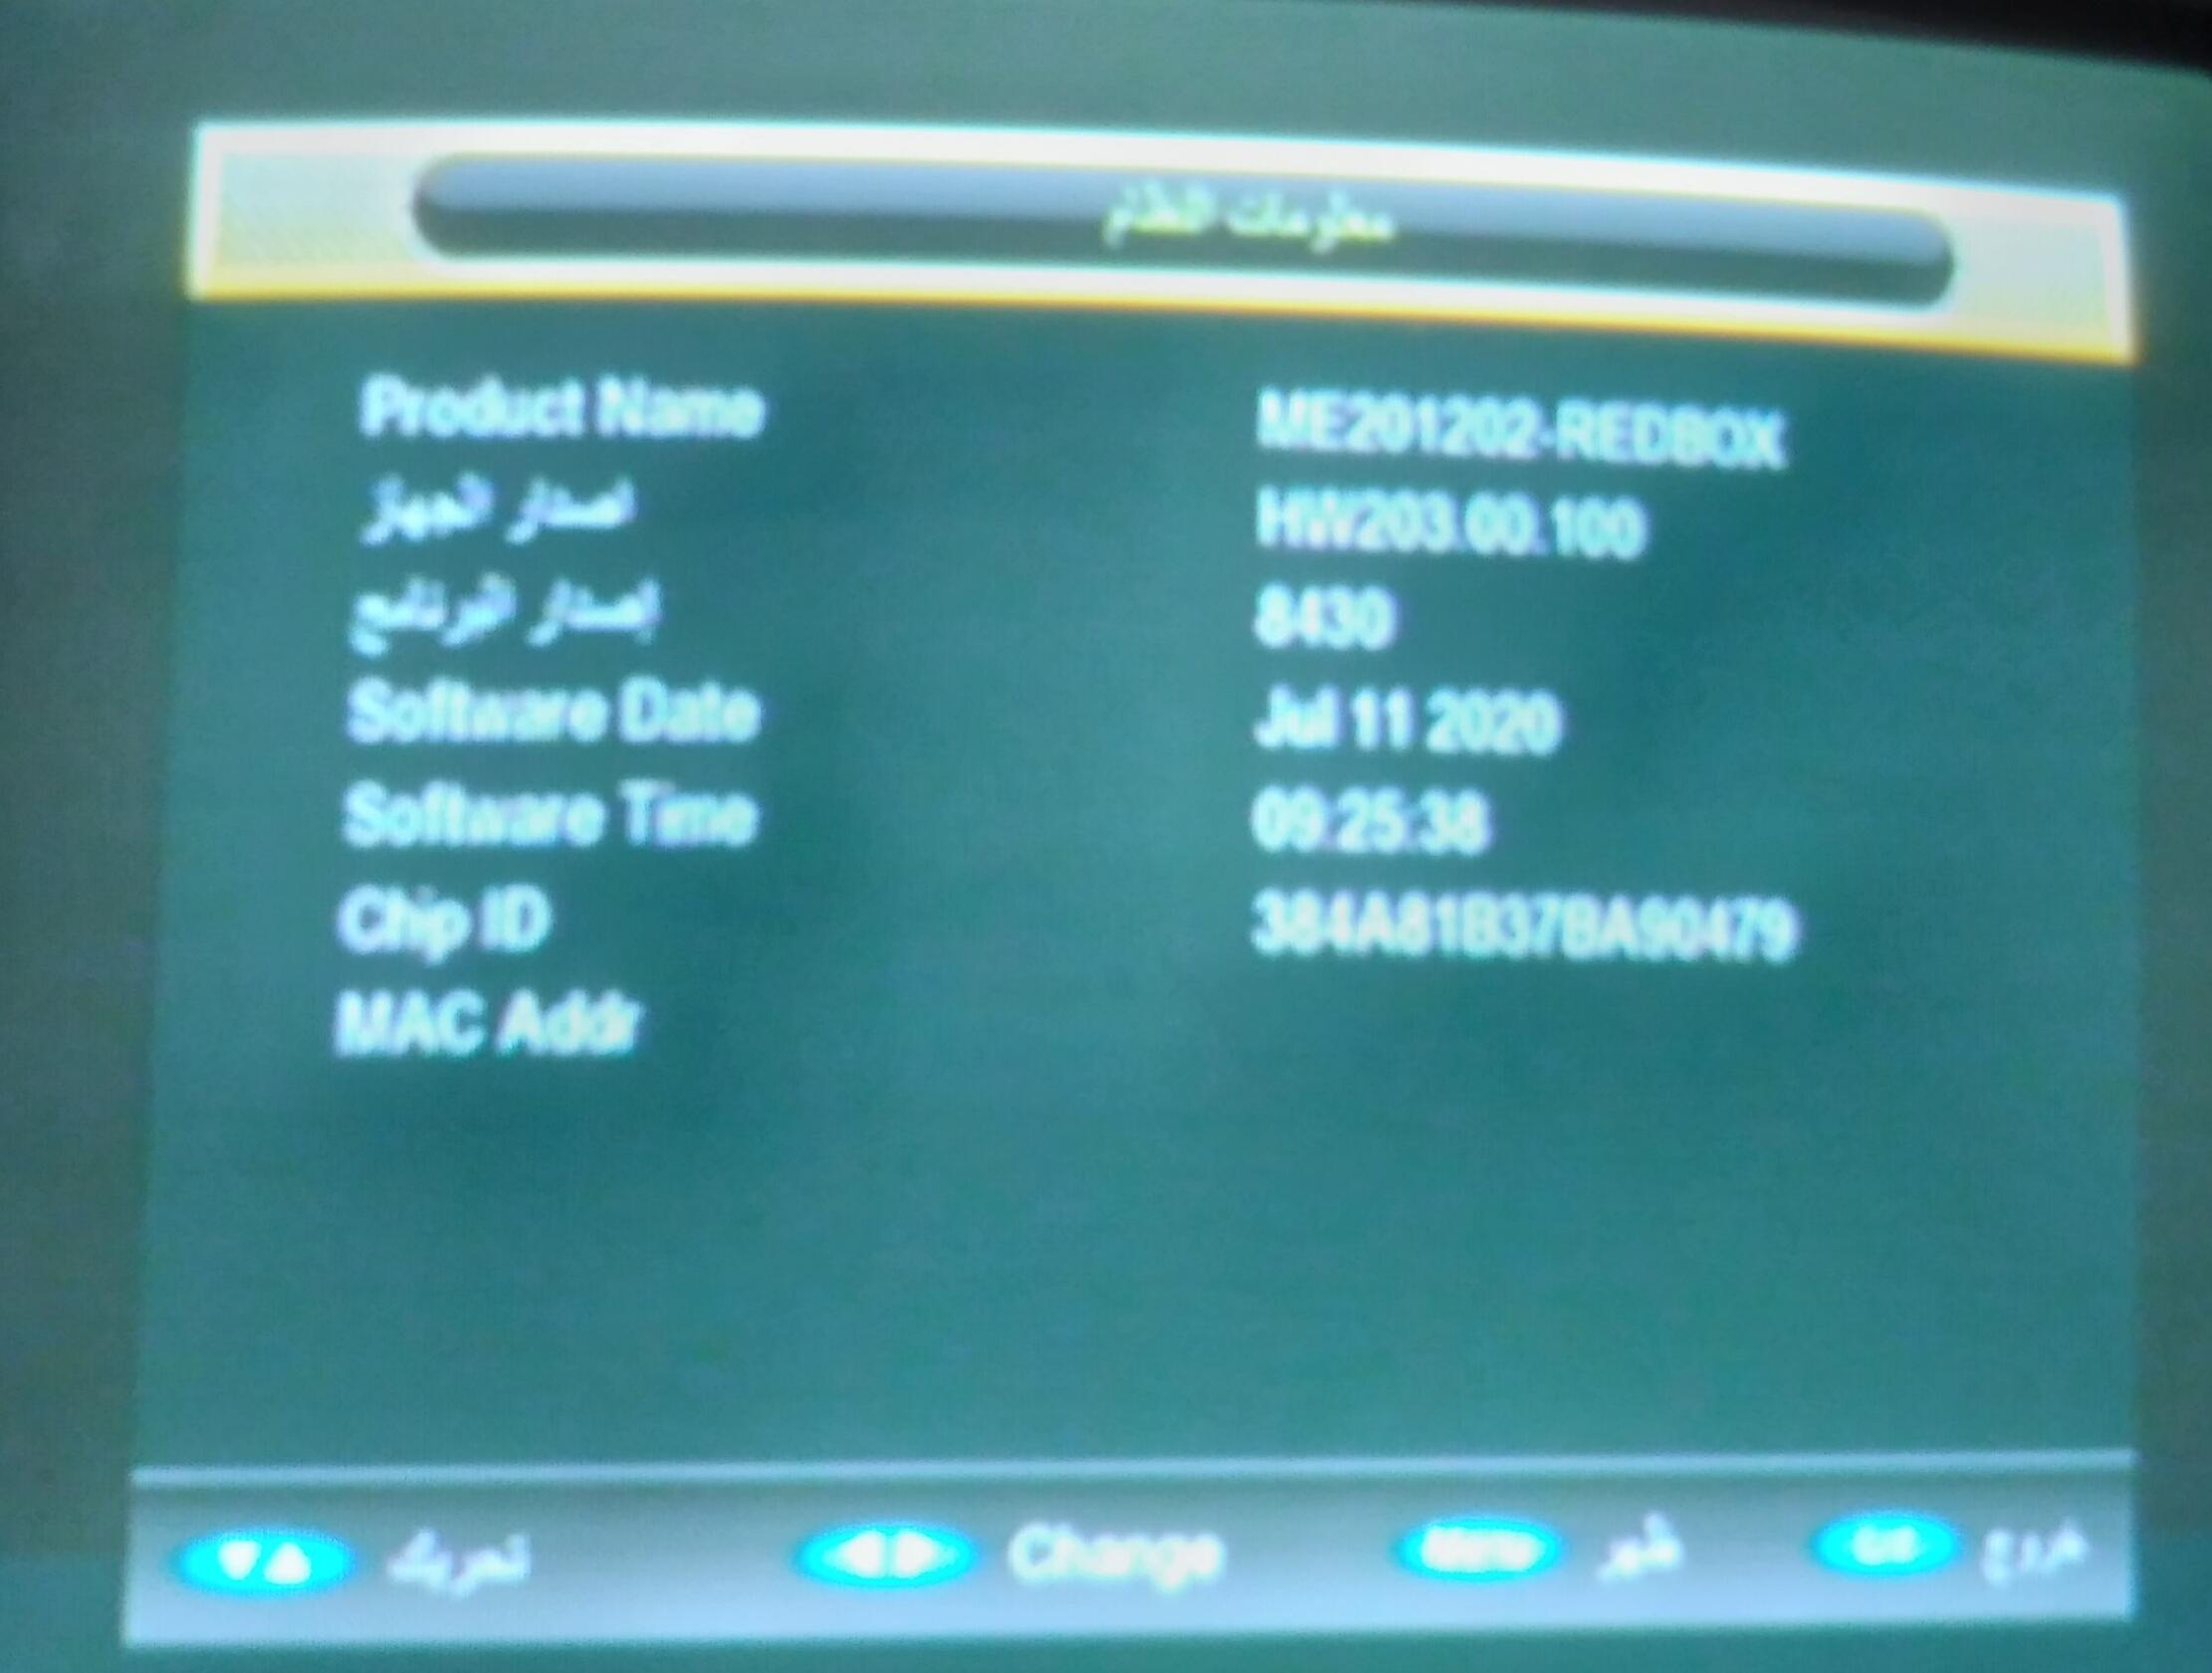 احدث ملف عربي REDBOX RX-9000 HD MINI وroyal 999 الاحمرالمزود بـ2 شاشة رقمية و CAMEX الاسود 10-4-2023 P_2484hbvt91